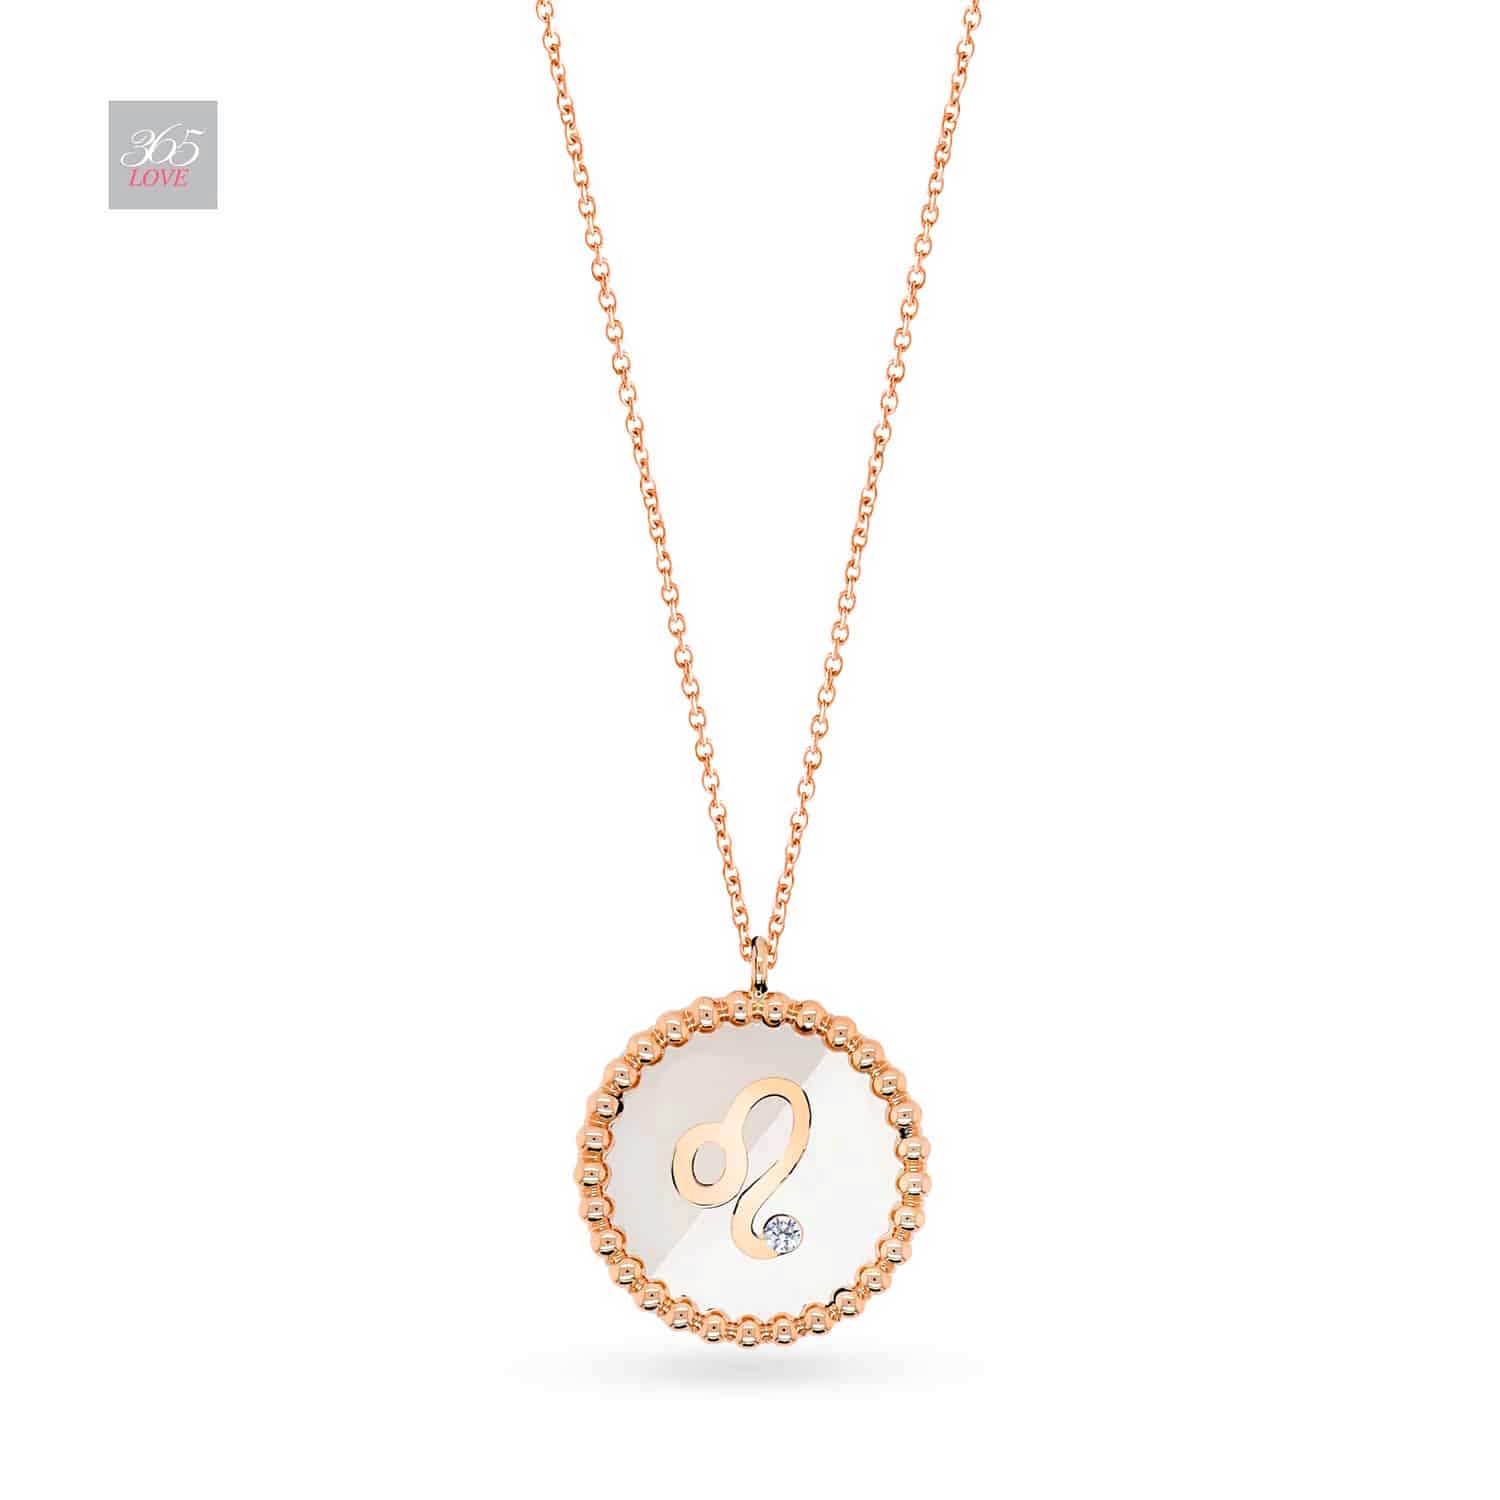 Leo Zodiac Necklace in Gold with Diamonds